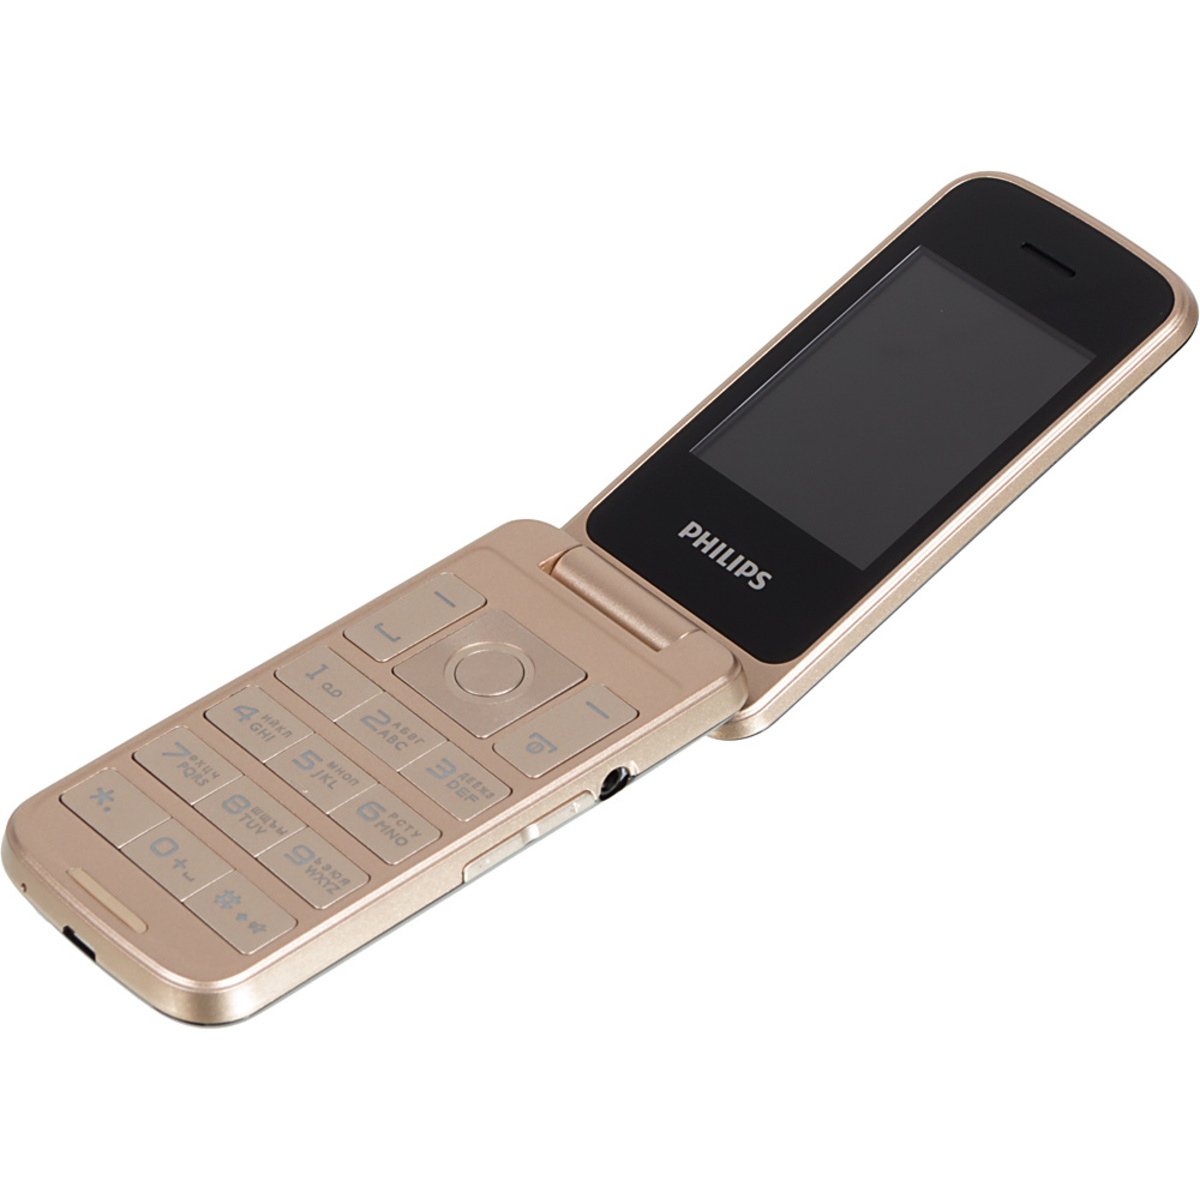 Мобильный телефон Philips Xenium E255, черный